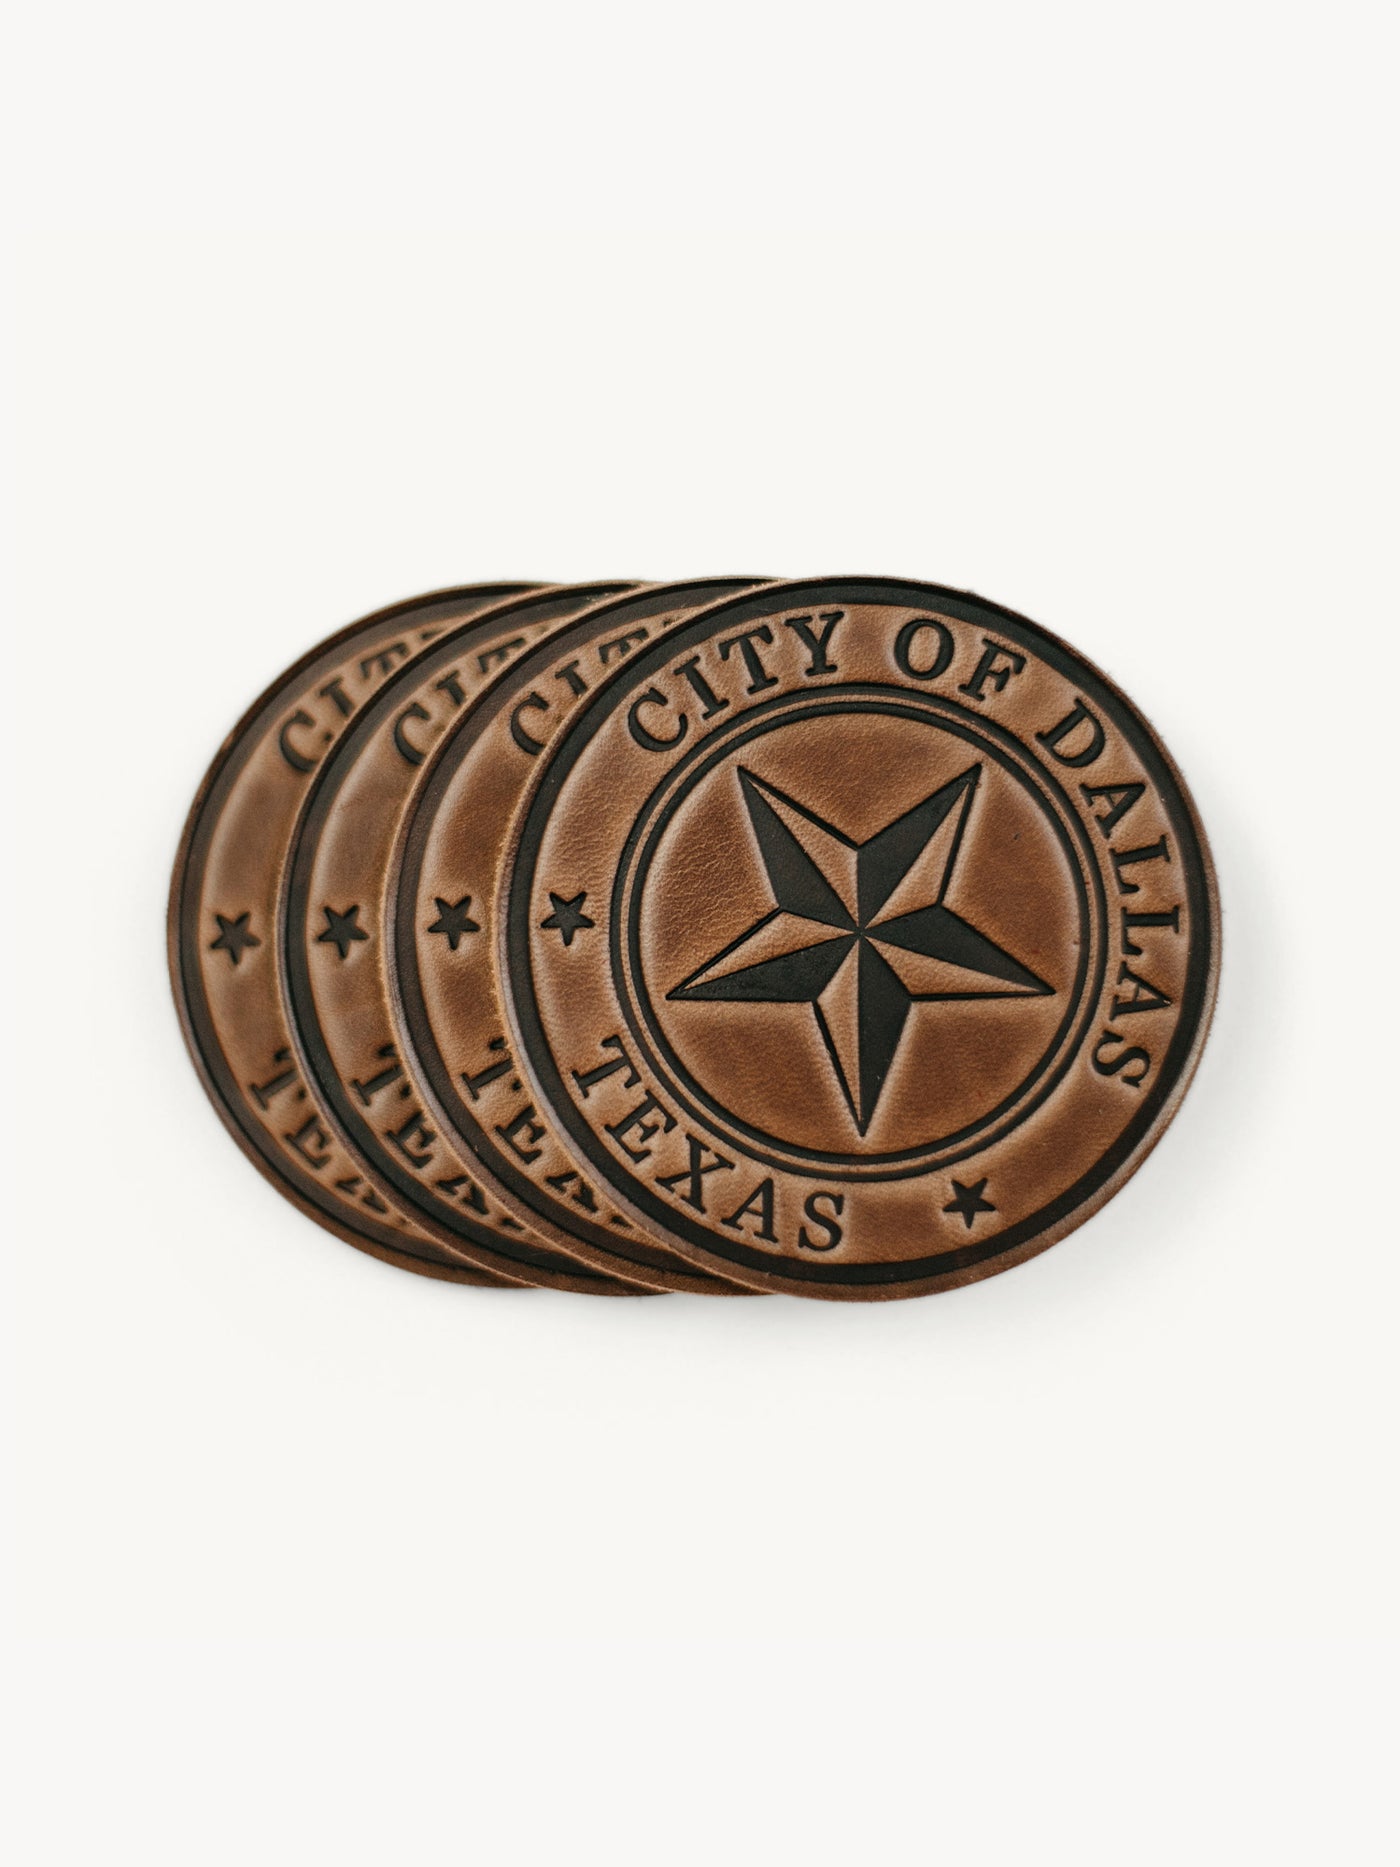 Dallas Texas City Seal Coasters